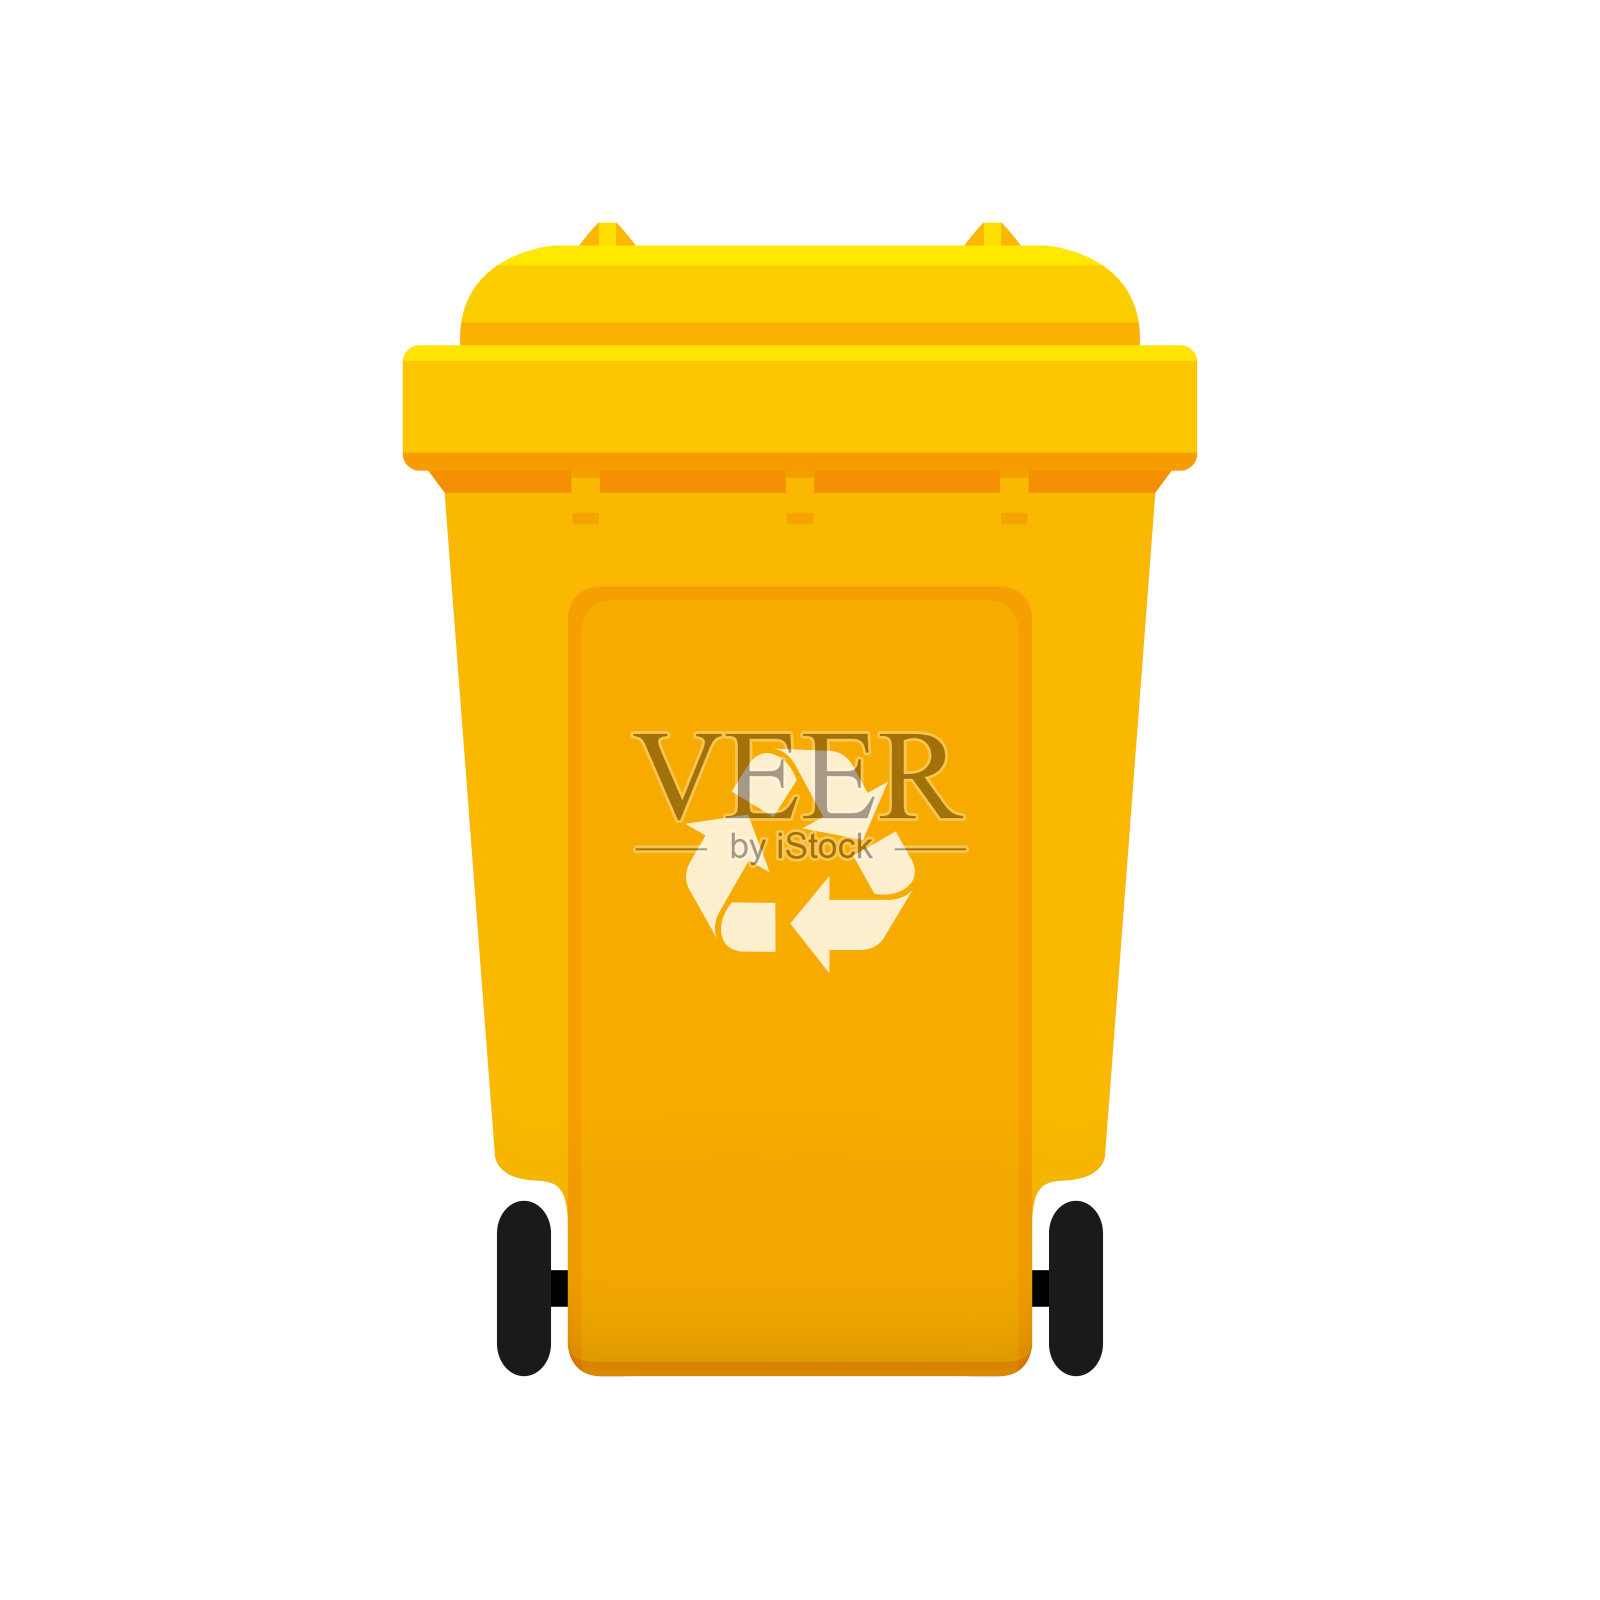 回收箱，白色背景上的可循环塑料黄色轮状回收箱，带有可循环废物标志的黄色轮状回收箱正面视图，表示垃圾废物设计元素图片